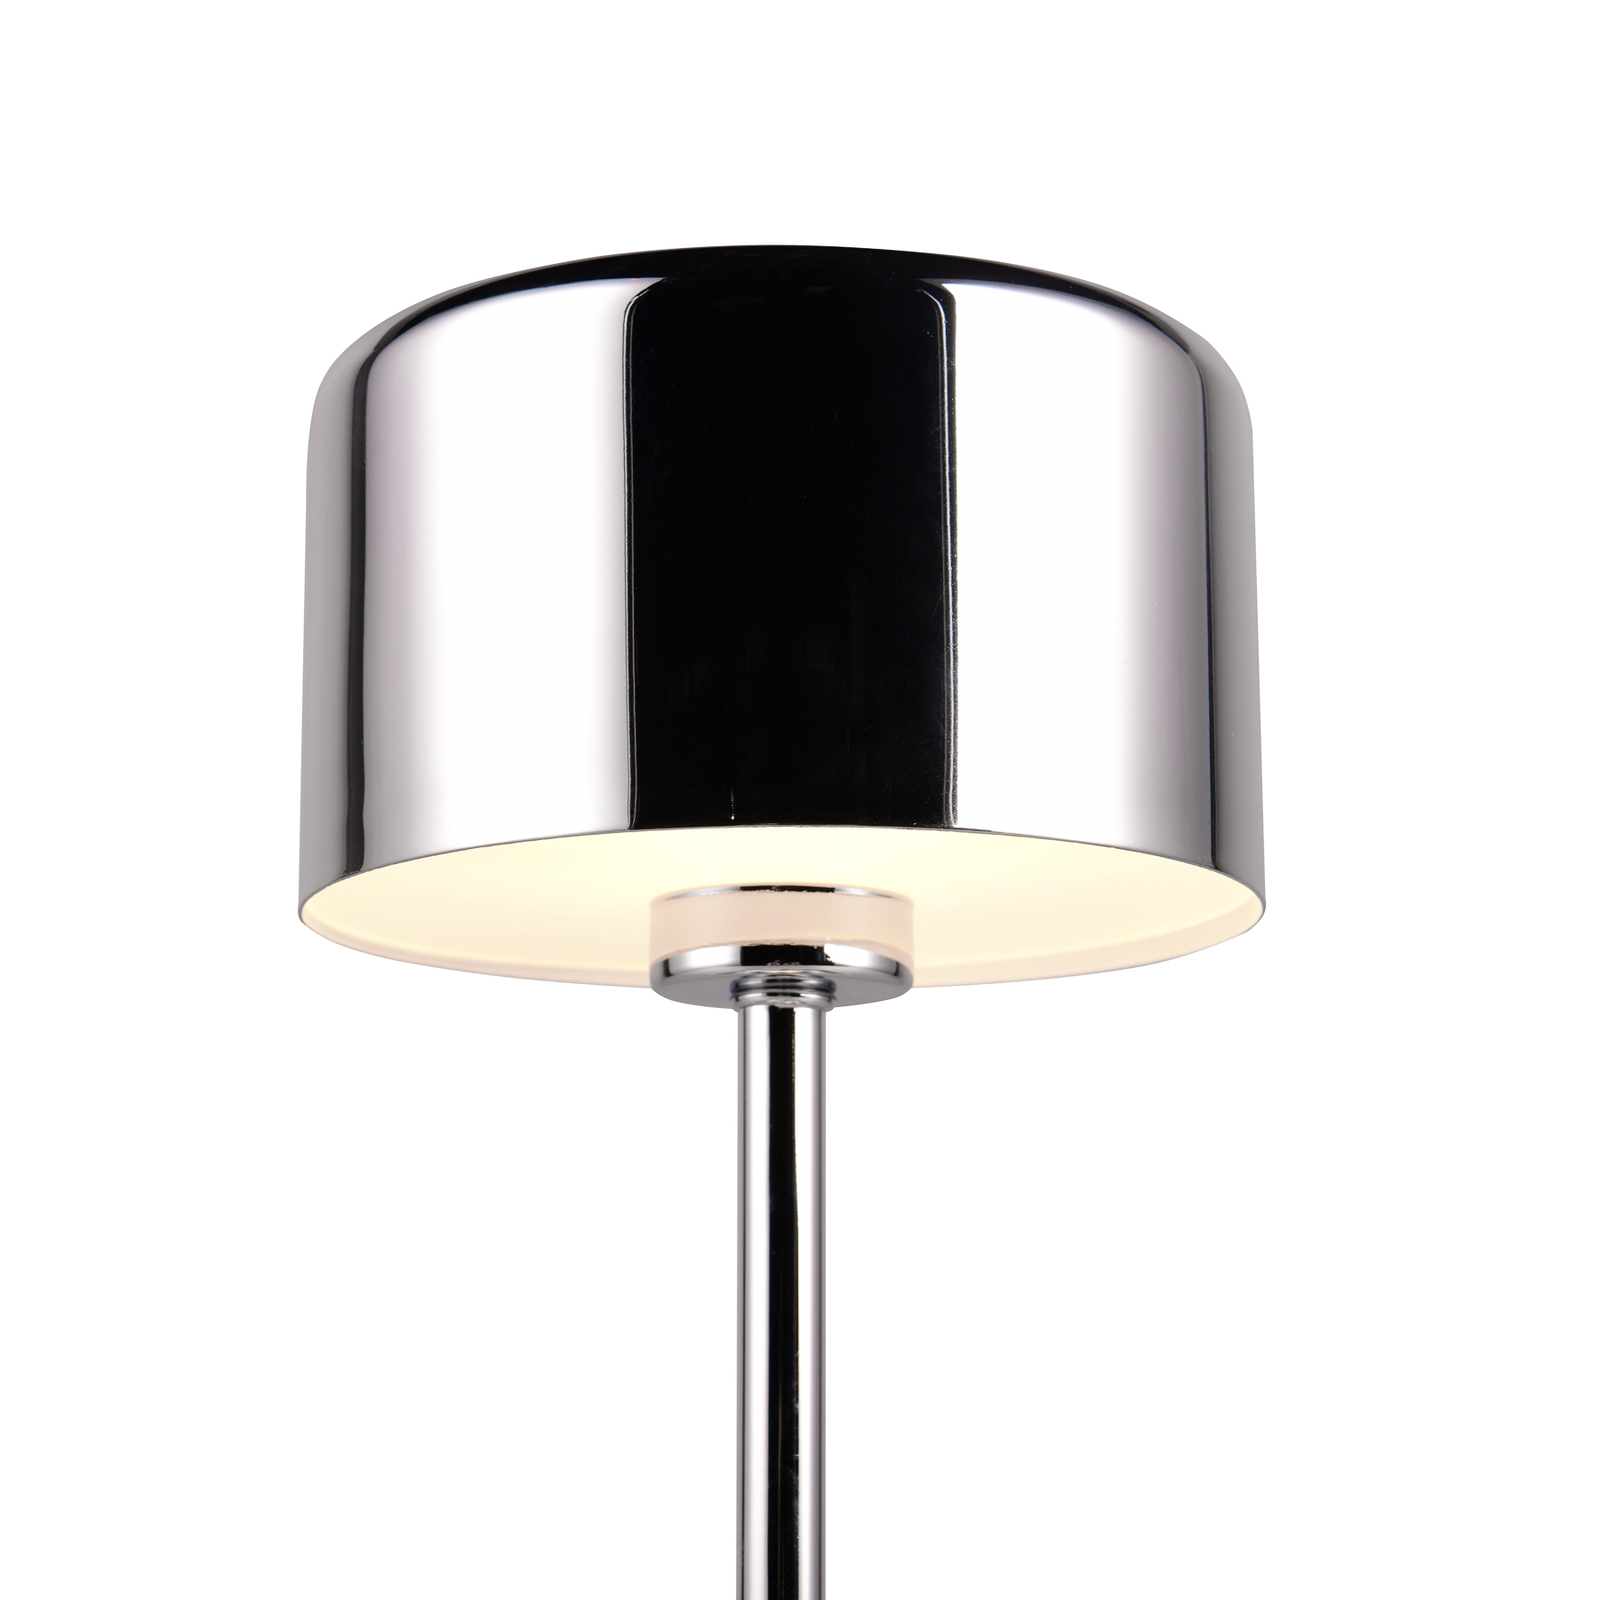 Jeff LED baterijska stolna lampa, krom boje, visina 30 cm, metal